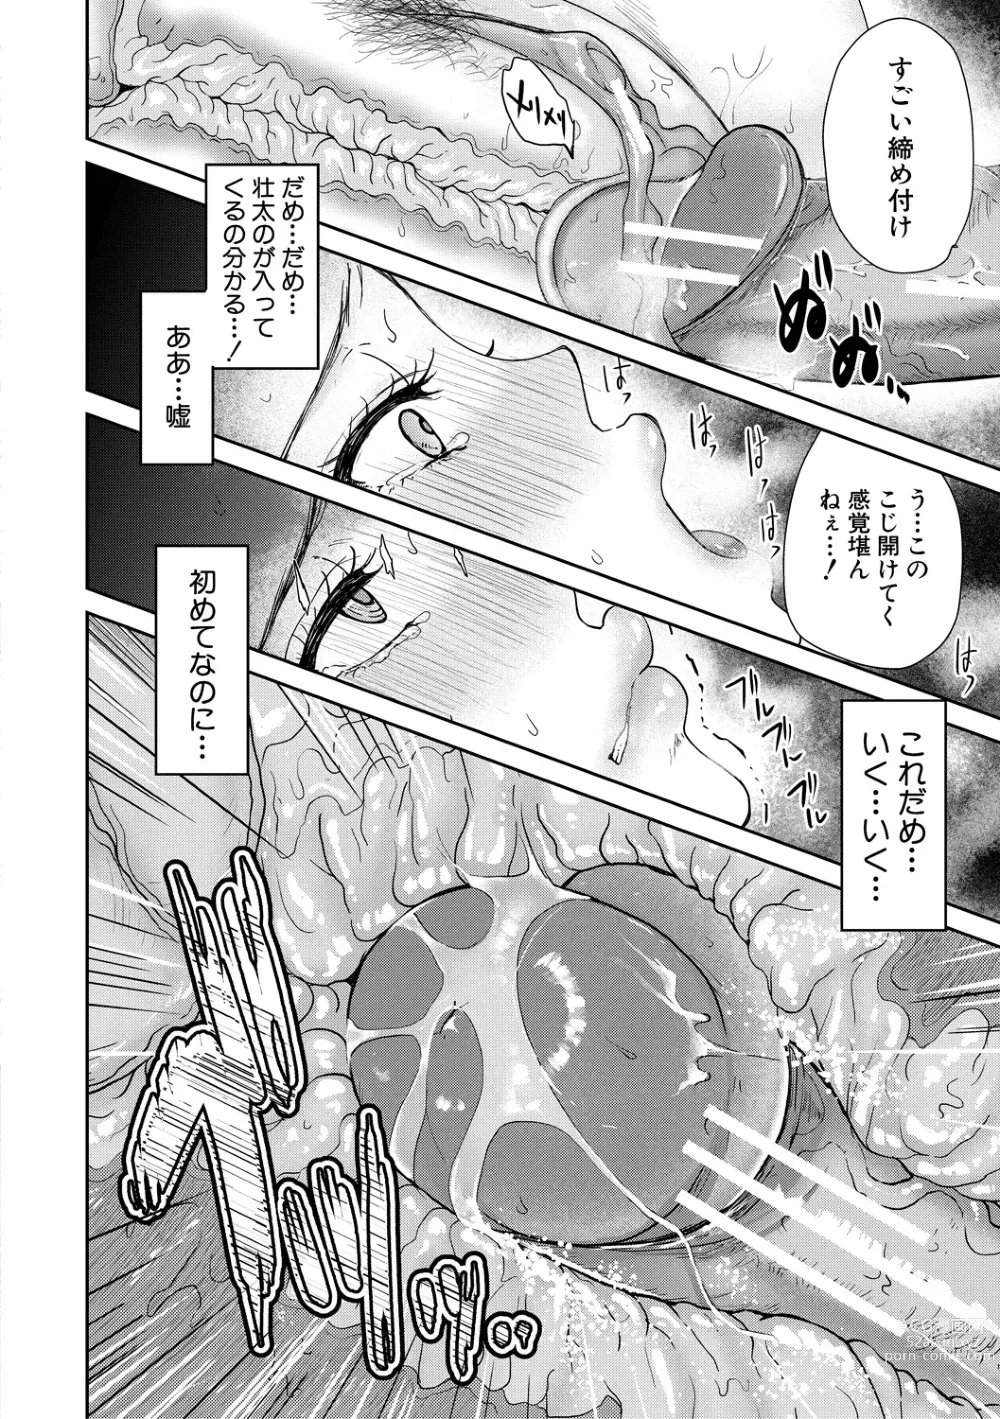 Page 28 of manga Shiborikiri Ane Body